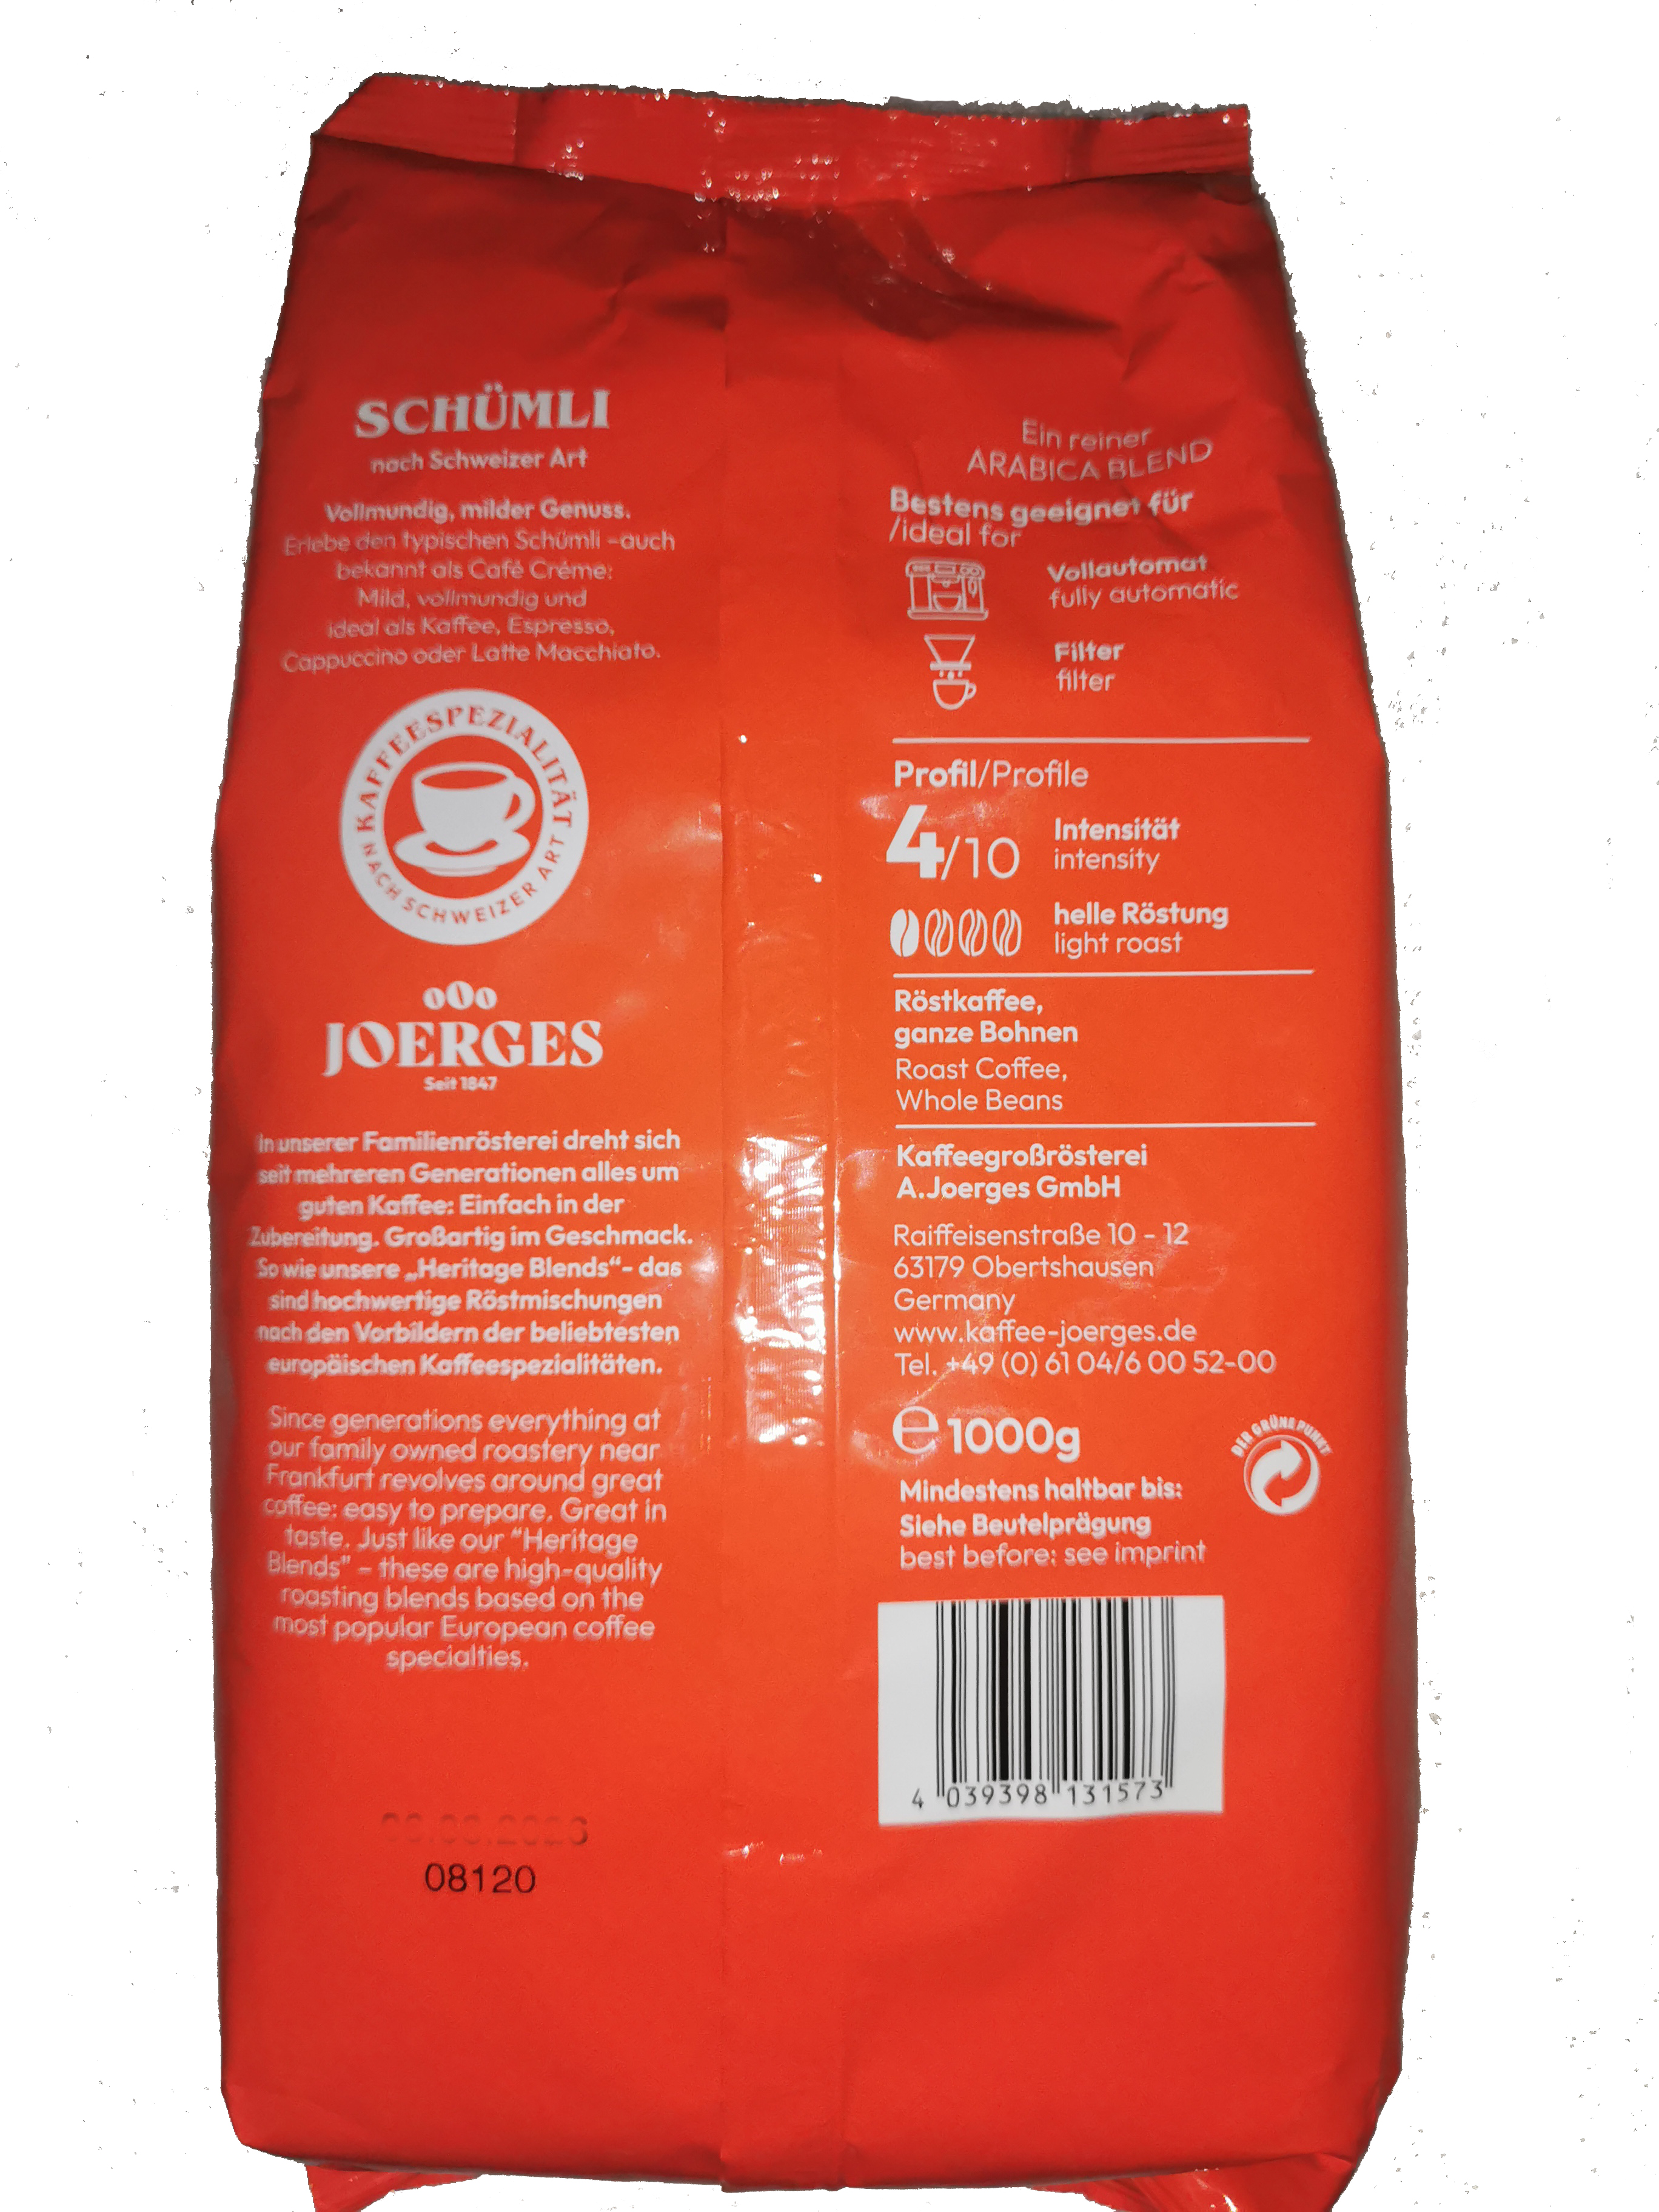 1000g Schümli-Kaffee – Geschmackserlebnis in jeder Tasse